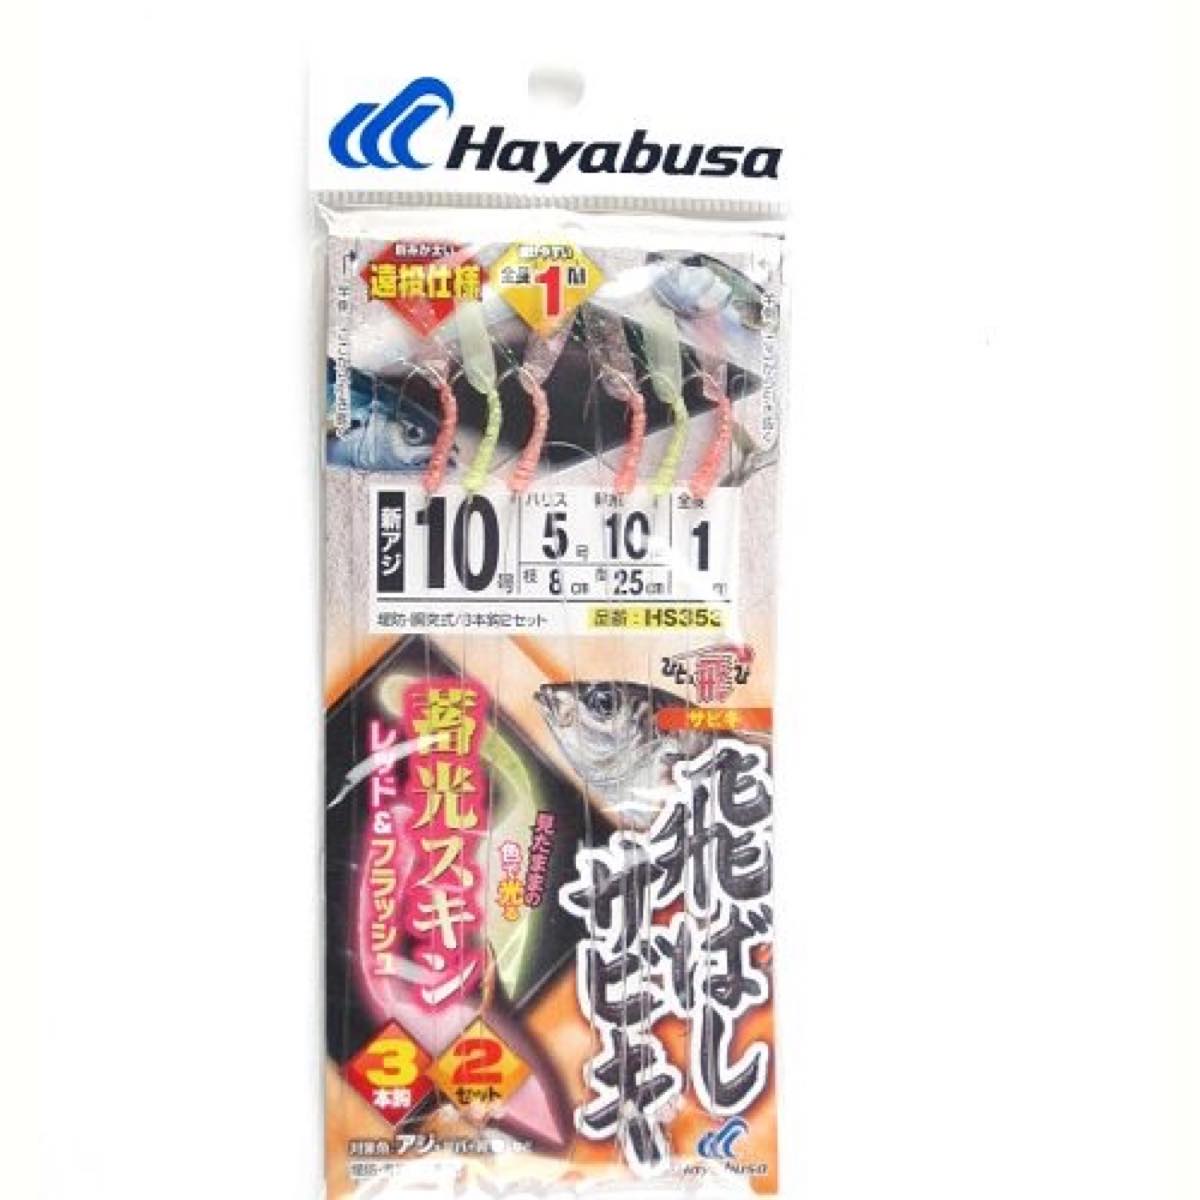 ハヤブサ Hayabusa ひとっ飛び 飛ばしサビキ 蓄光スキン レッド & フラッシュ HS353 針10号-ハリス5号 ネコポス(メール便)対象商品